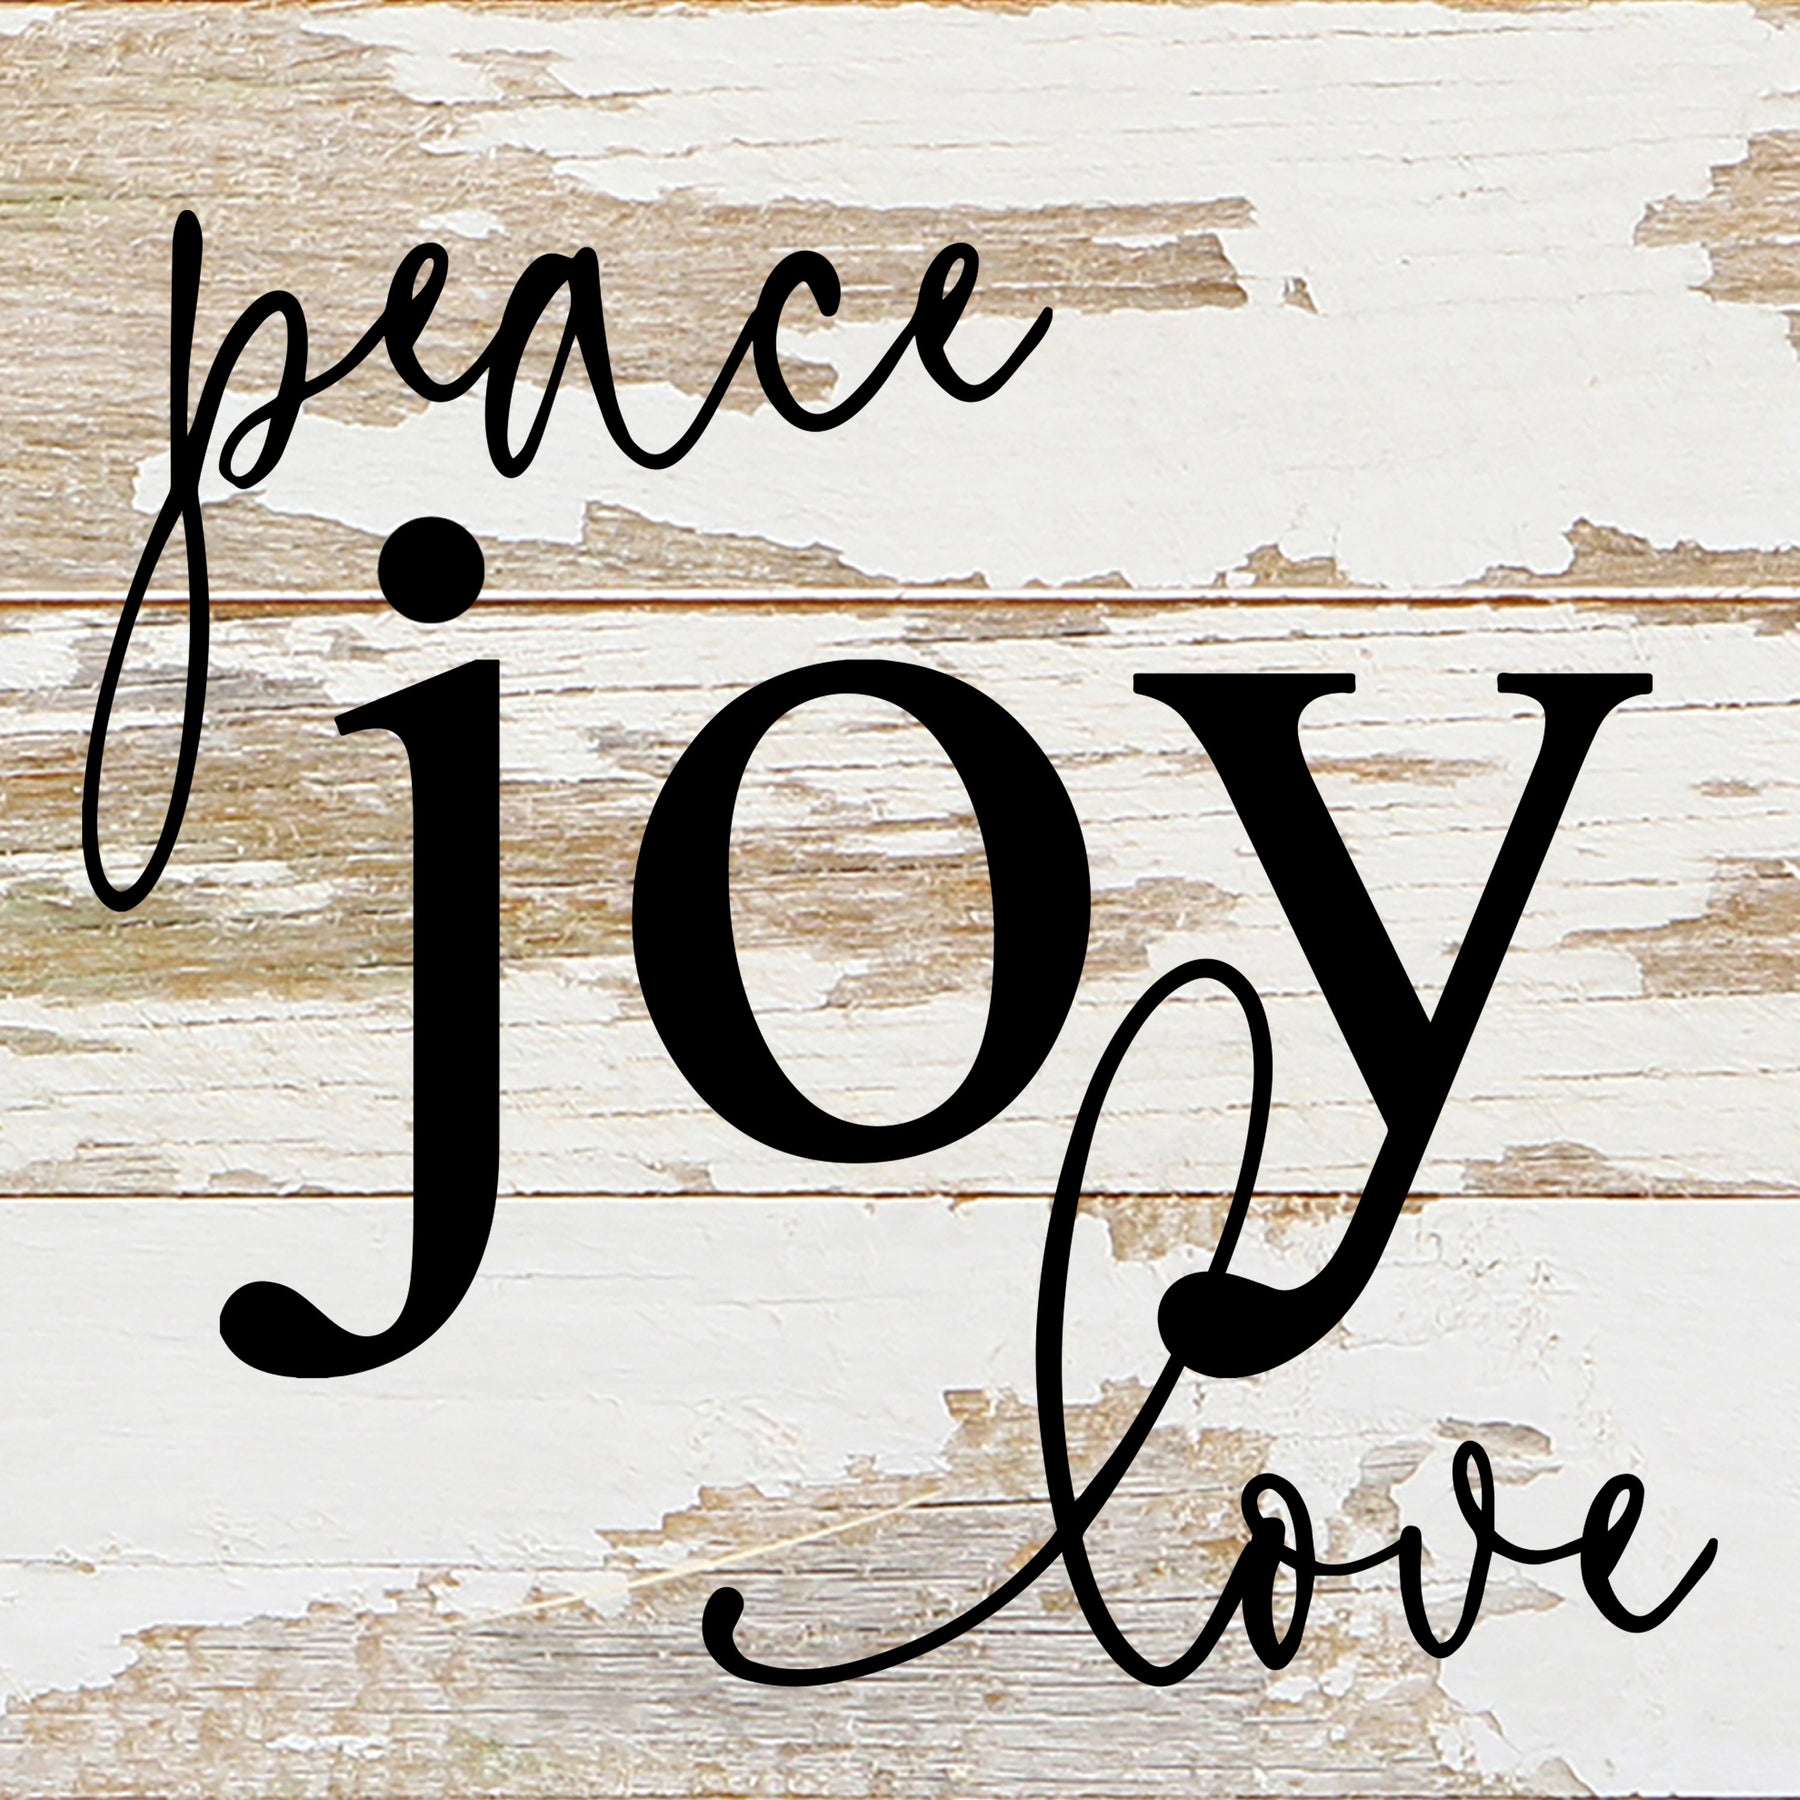 Peace, joy, love / 6"x6" Reclaimed Wood Sign